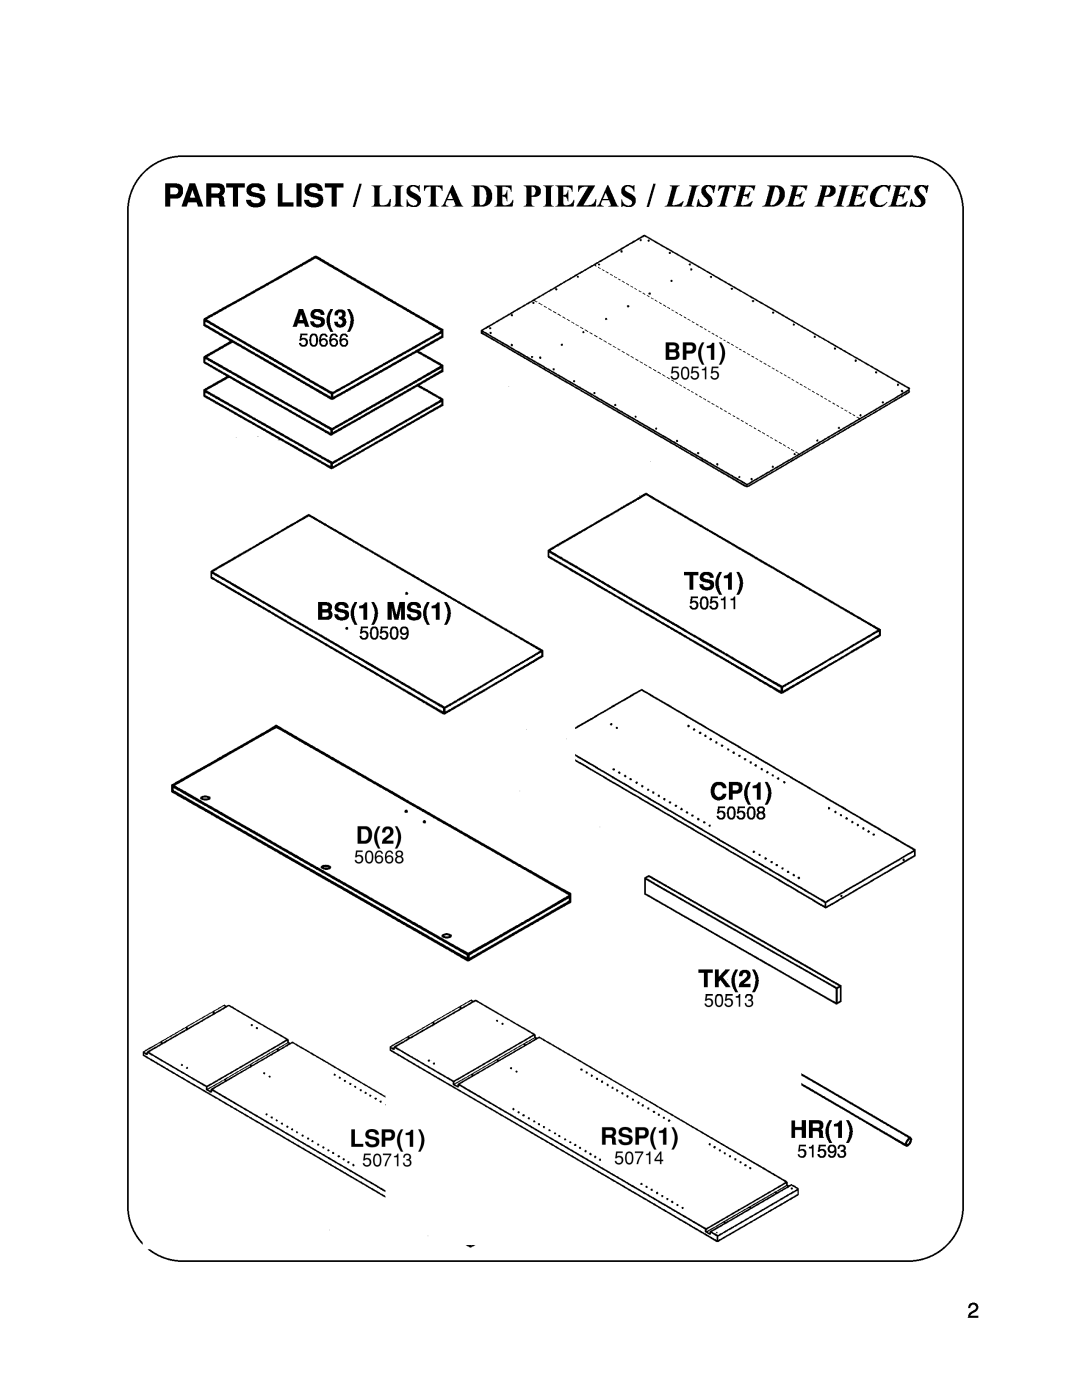 Closet Maid 12146 manual Parts List / Lista De Piezas / Liste De Pieces, BS1 MS1, LSP1, RSP1 